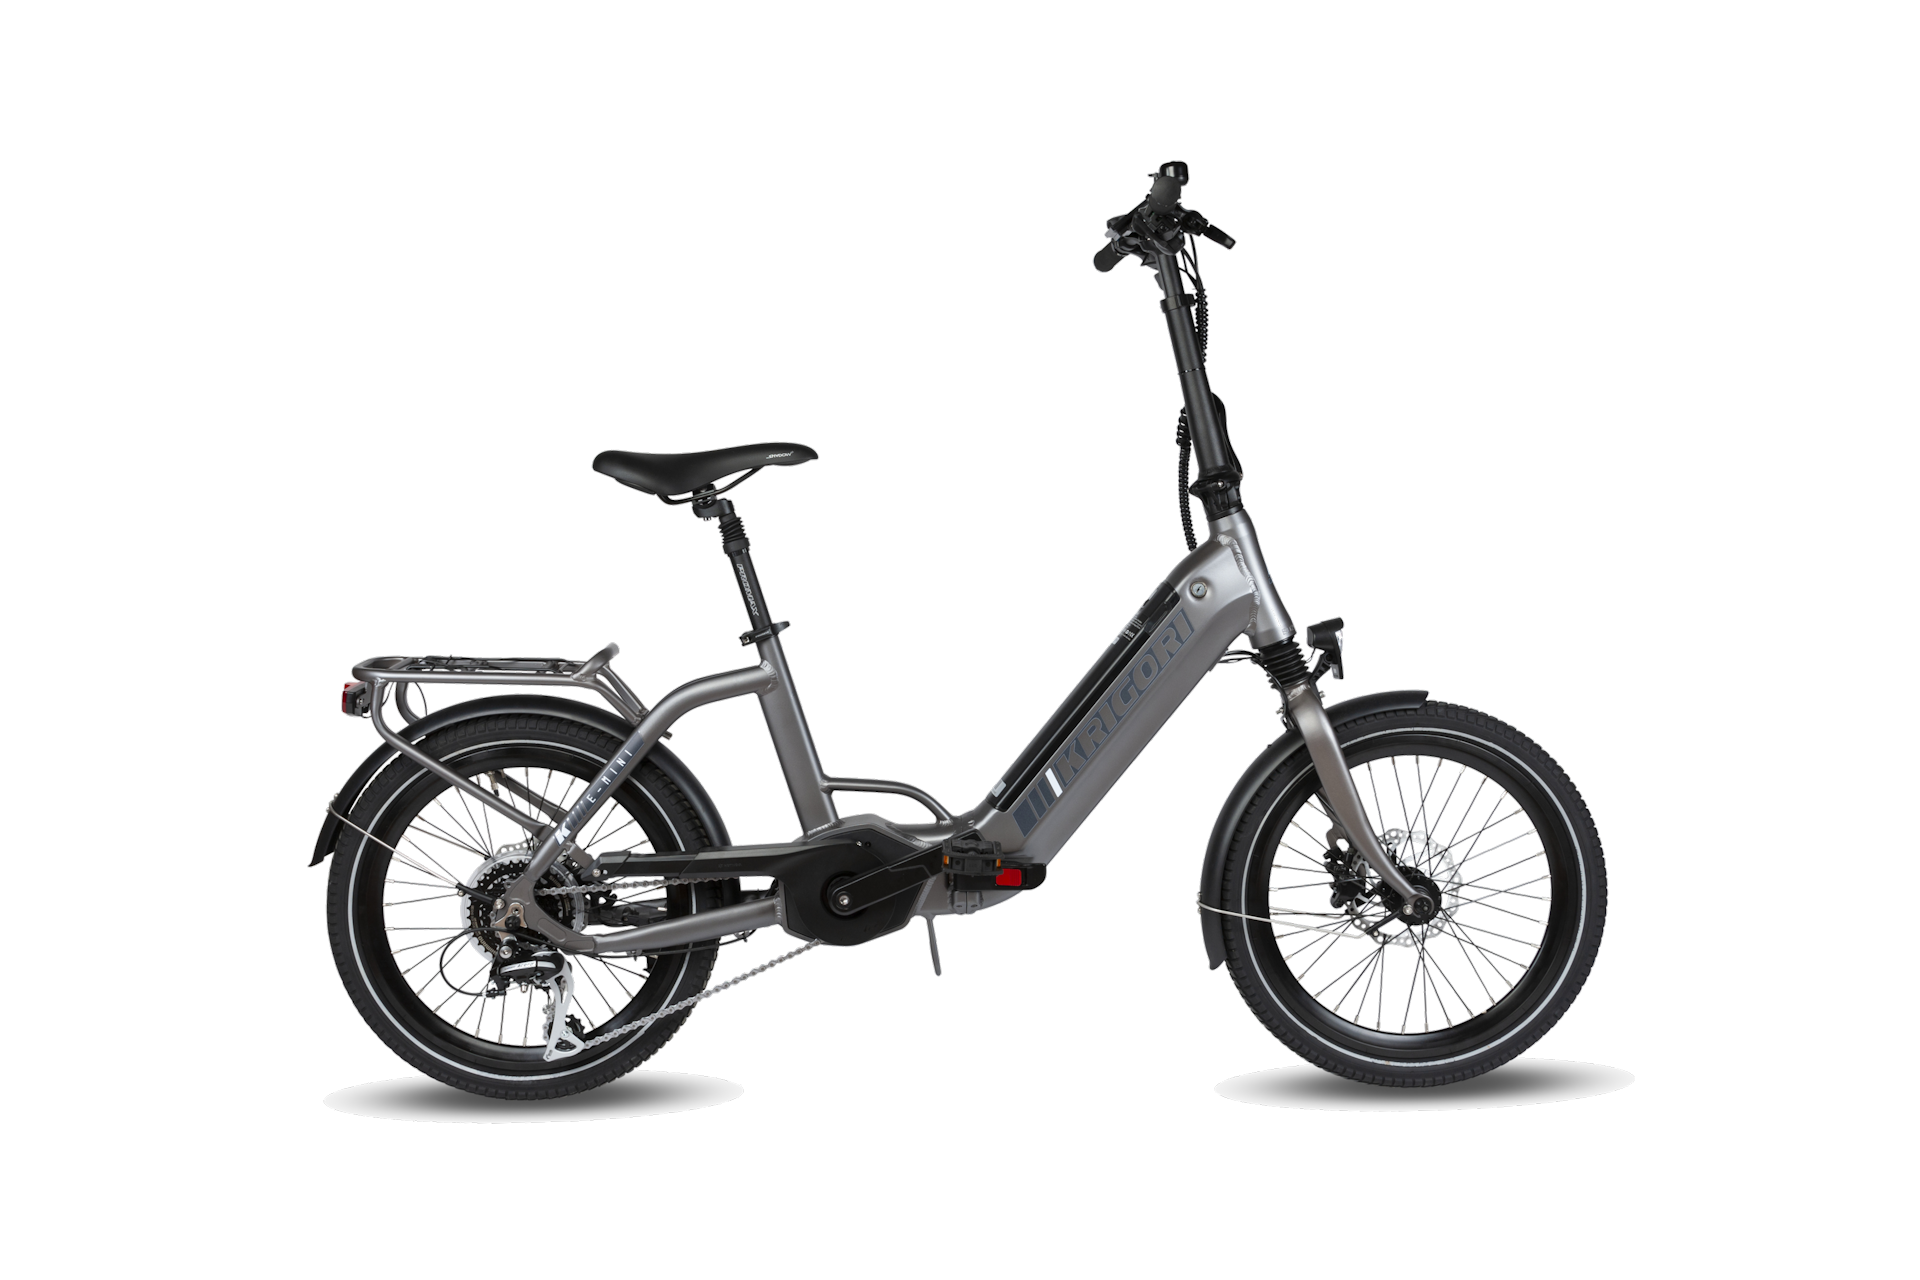 Promoten Verplaatsbaar Salie Krigori – Krigori is een Belgische fabrikant van fietsen en elektrische  fietsen